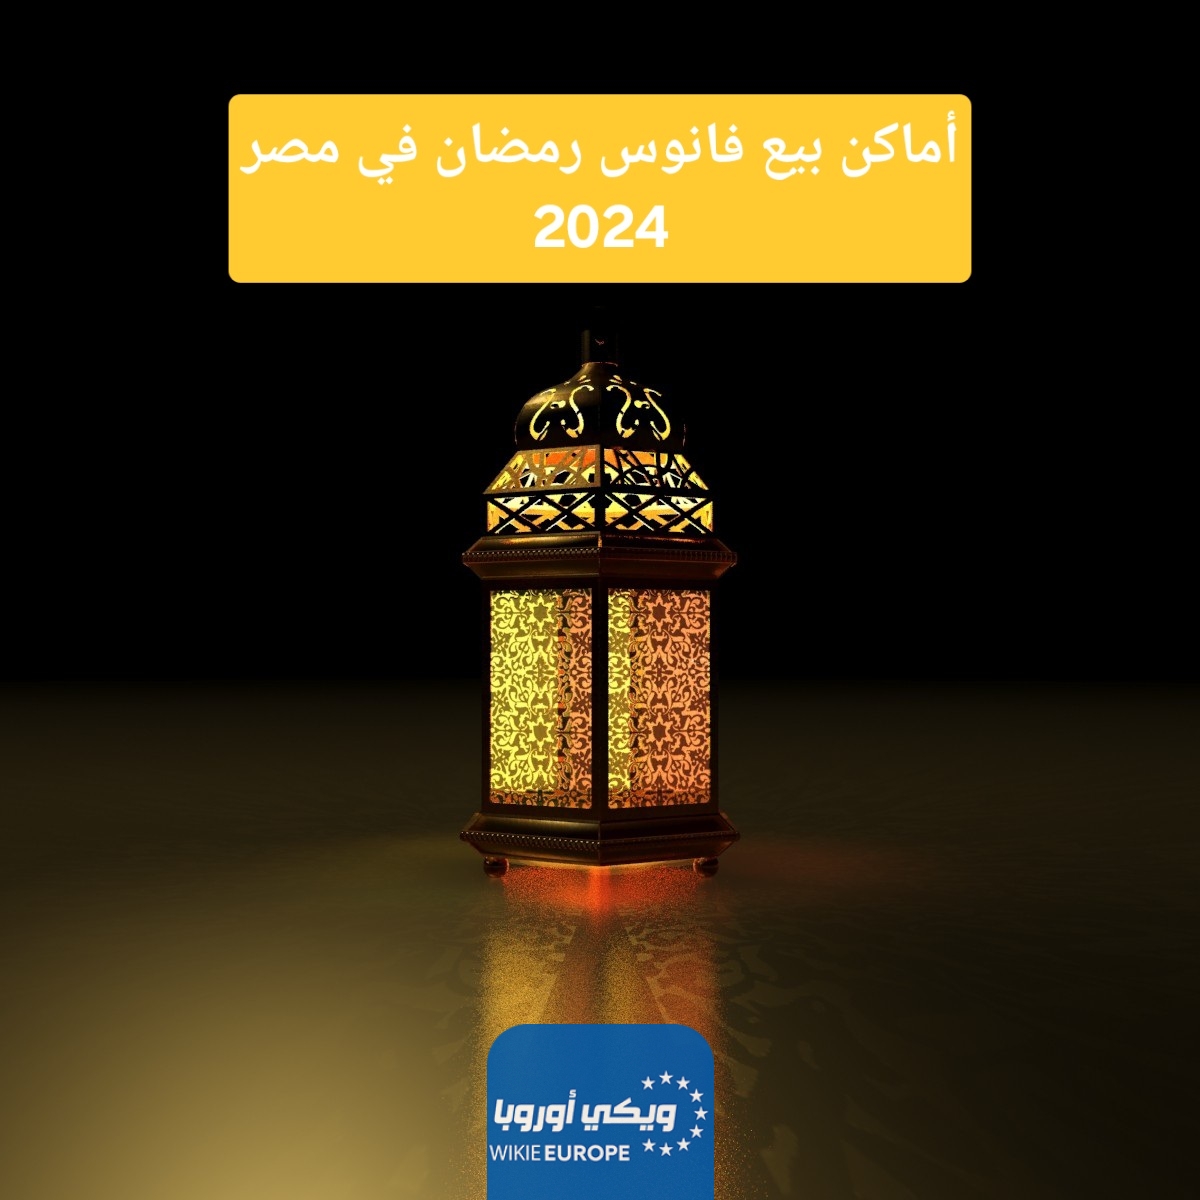 أماكن بيع فانوس رمضان في مصر 2024